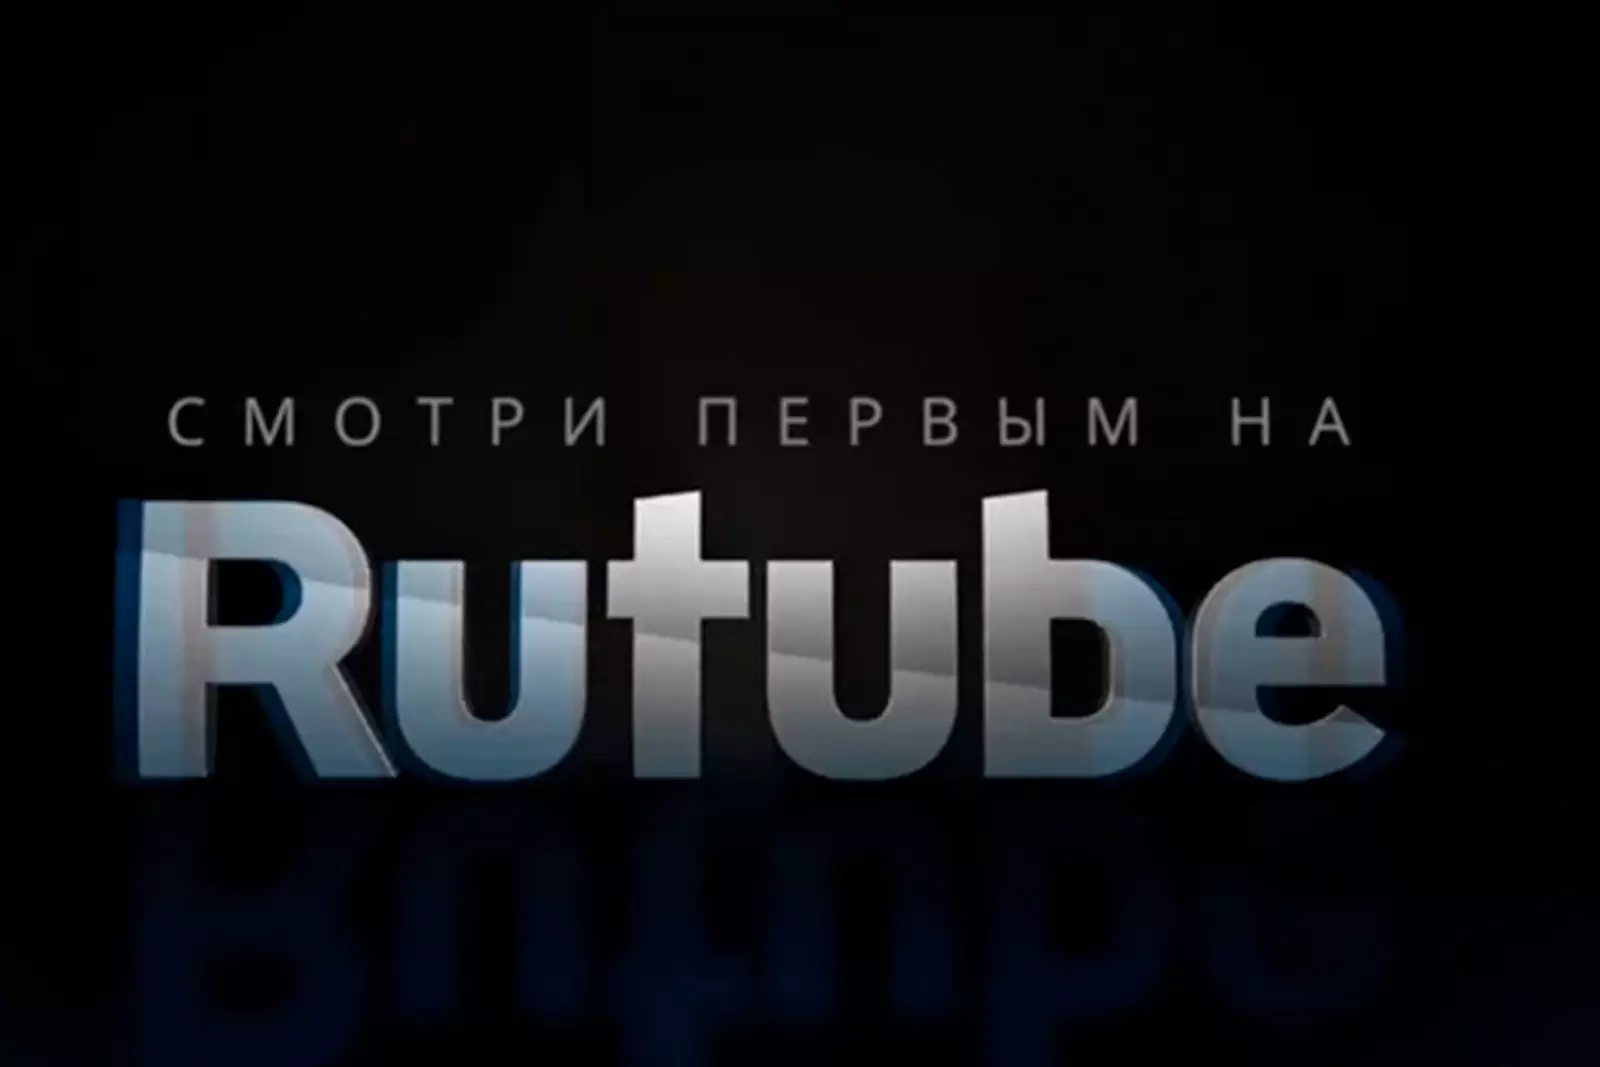 Rutube.ru